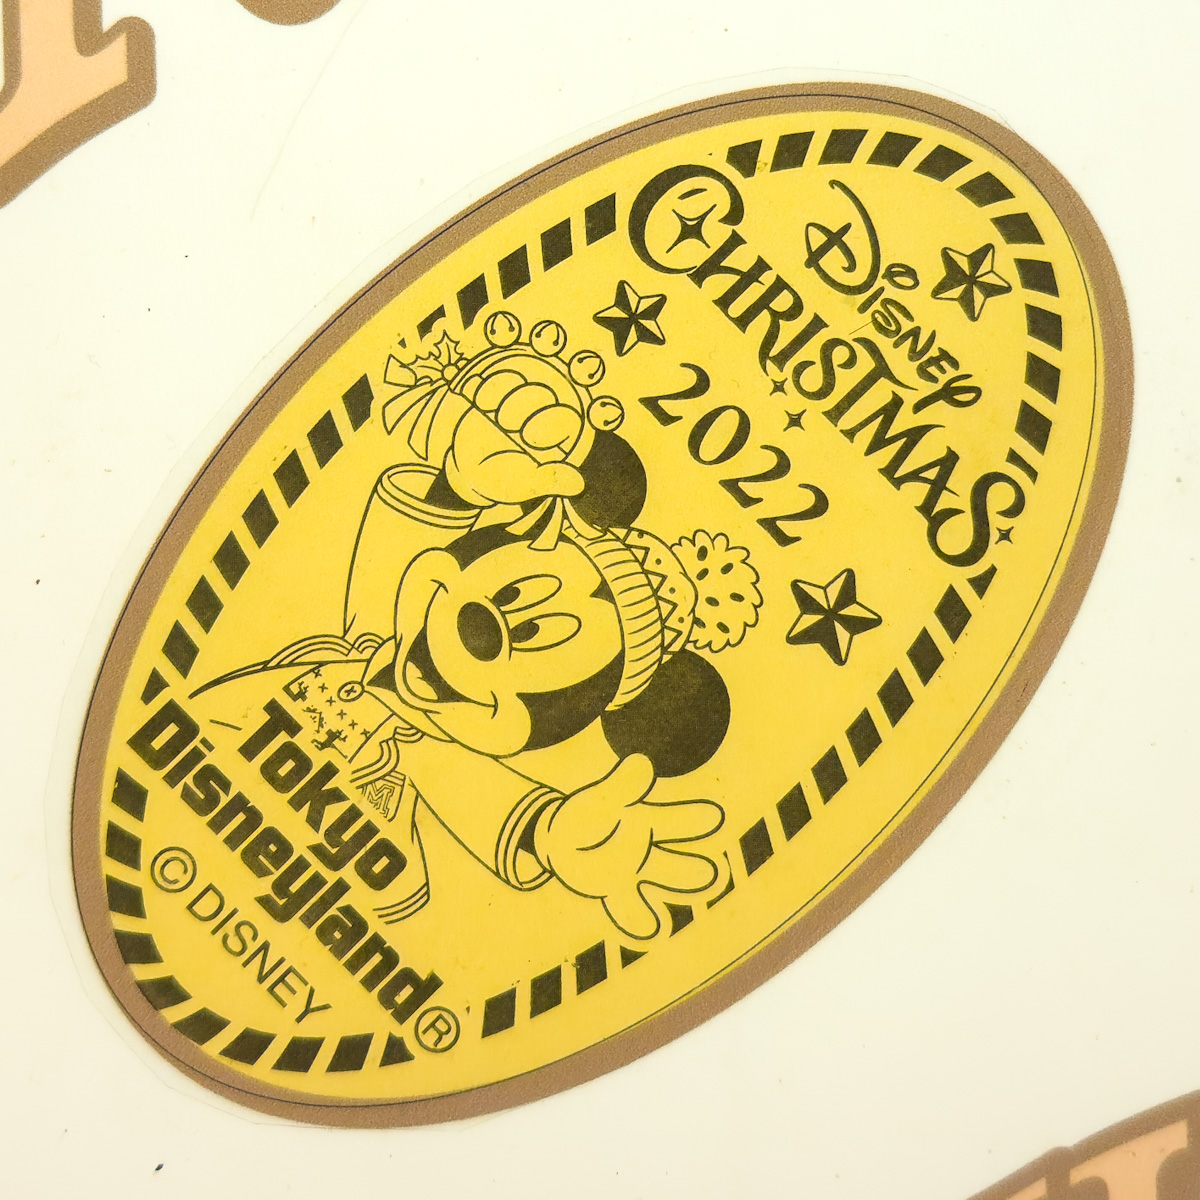 東京ディズニーランド「ペニーアーケード」"ディズニー・クリスマス2022"スーベニアメダルミッキーマウス